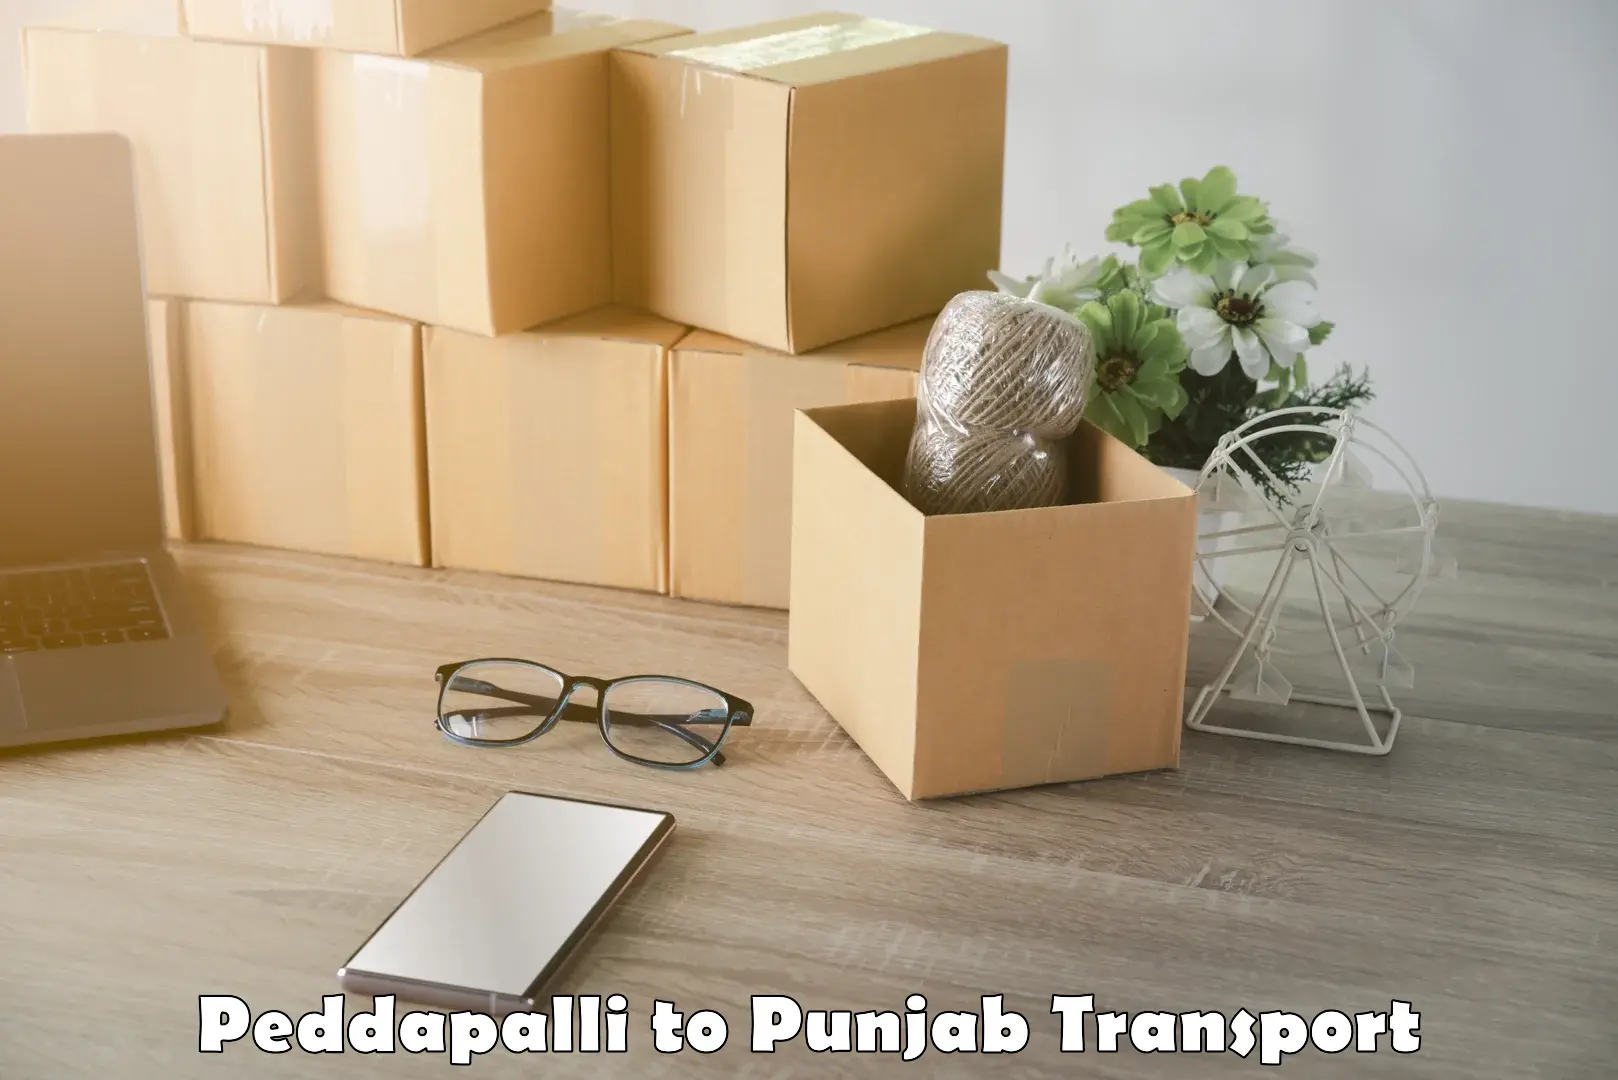 Online transport Peddapalli to Adampur Jalandhar